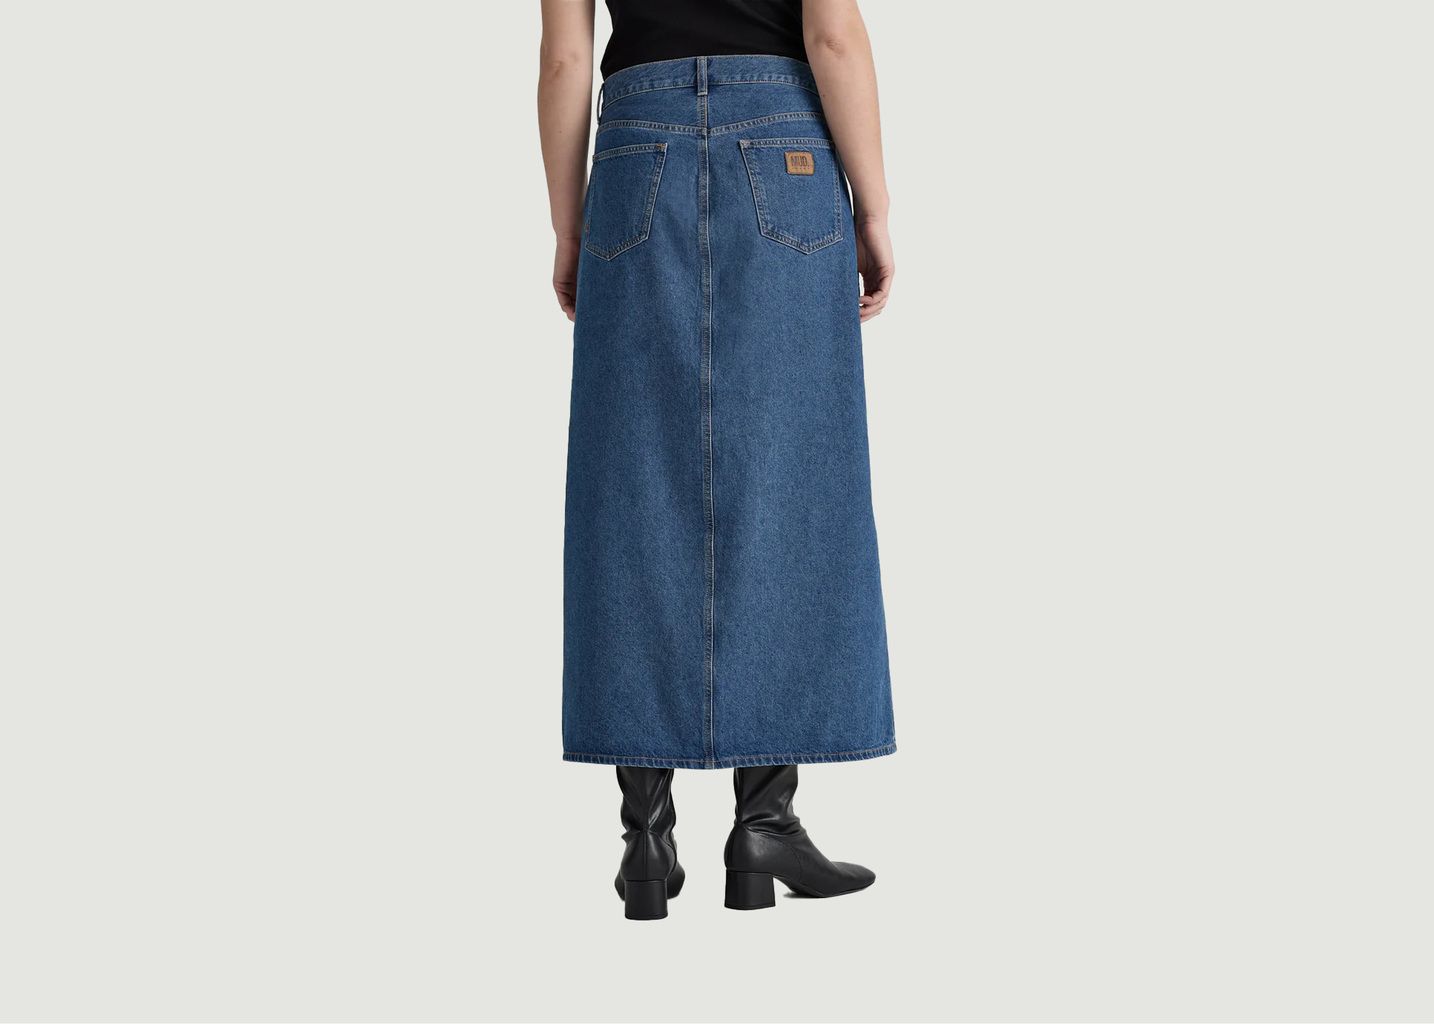 Lena long skirt - Mud Jeans